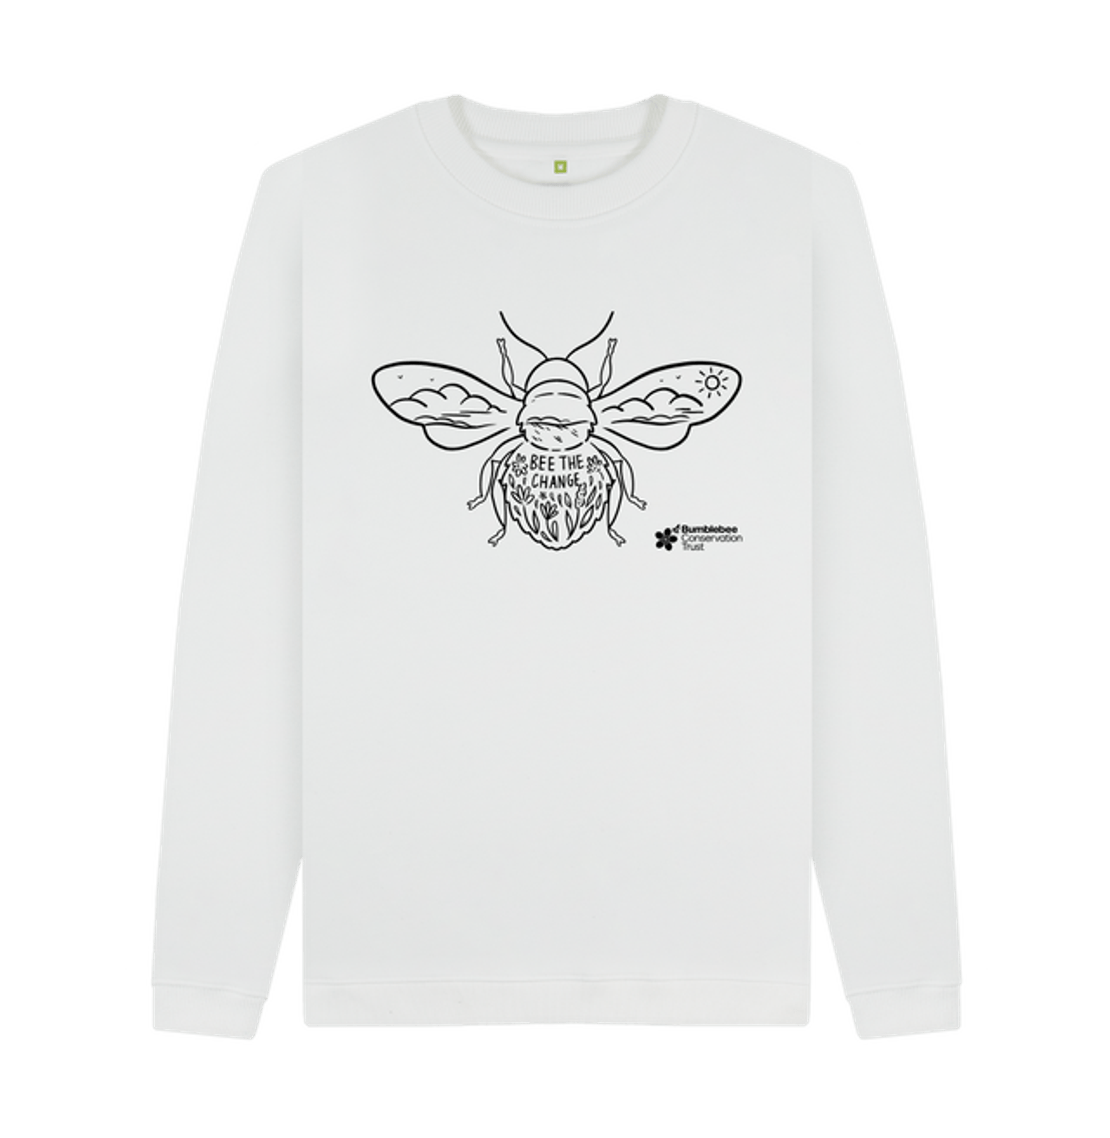 Bee the Change Hoodie Honeybee Conservation Sweatshirt 